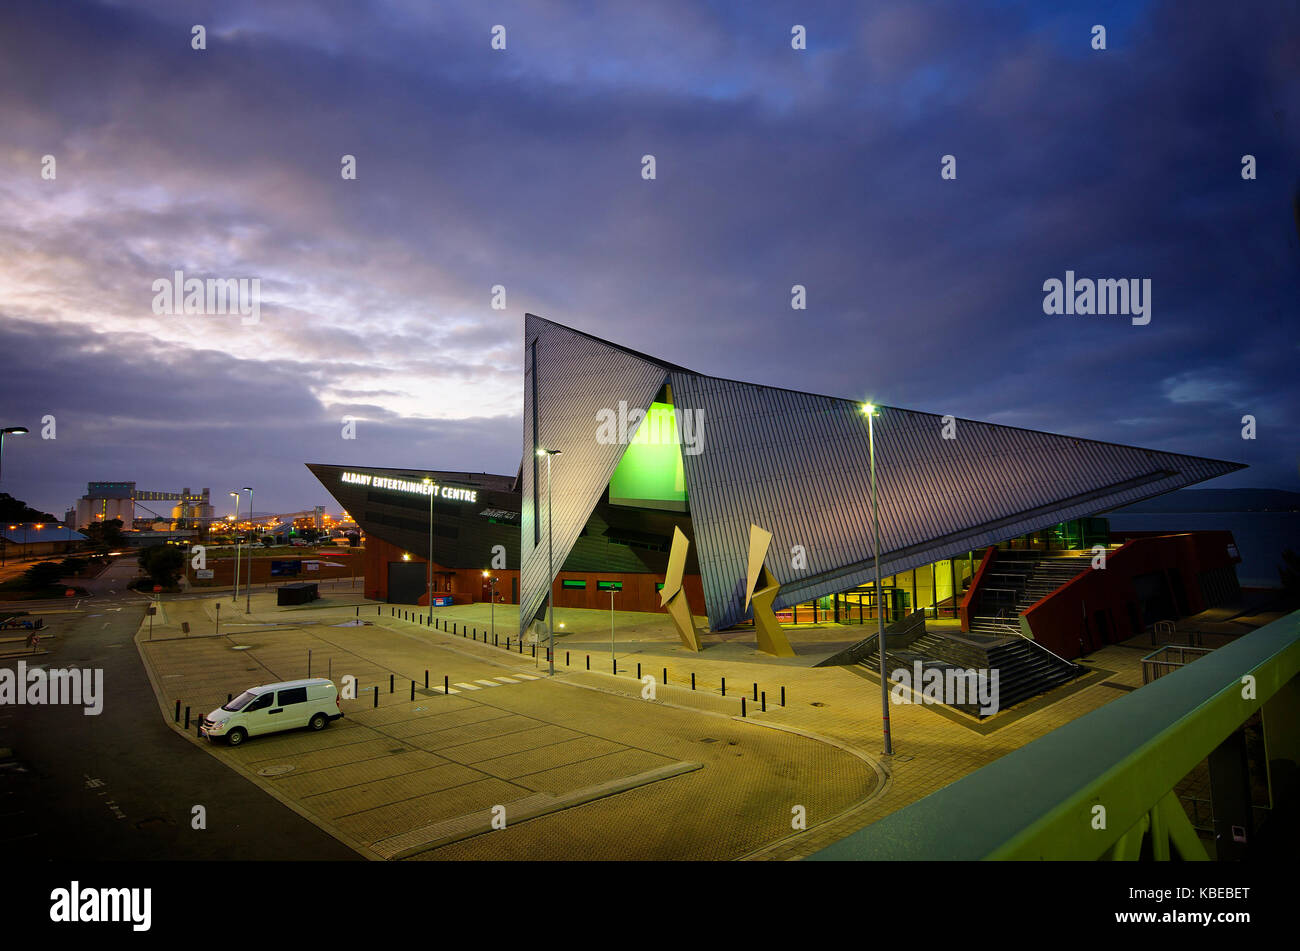 Albany Entertainment Center, am Vorplatz des Princess Royal Harbour, wurde 2010 eröffnet und ist ein Veranstaltungsort für darstellende Kunst und Konferenzen. Stockfoto